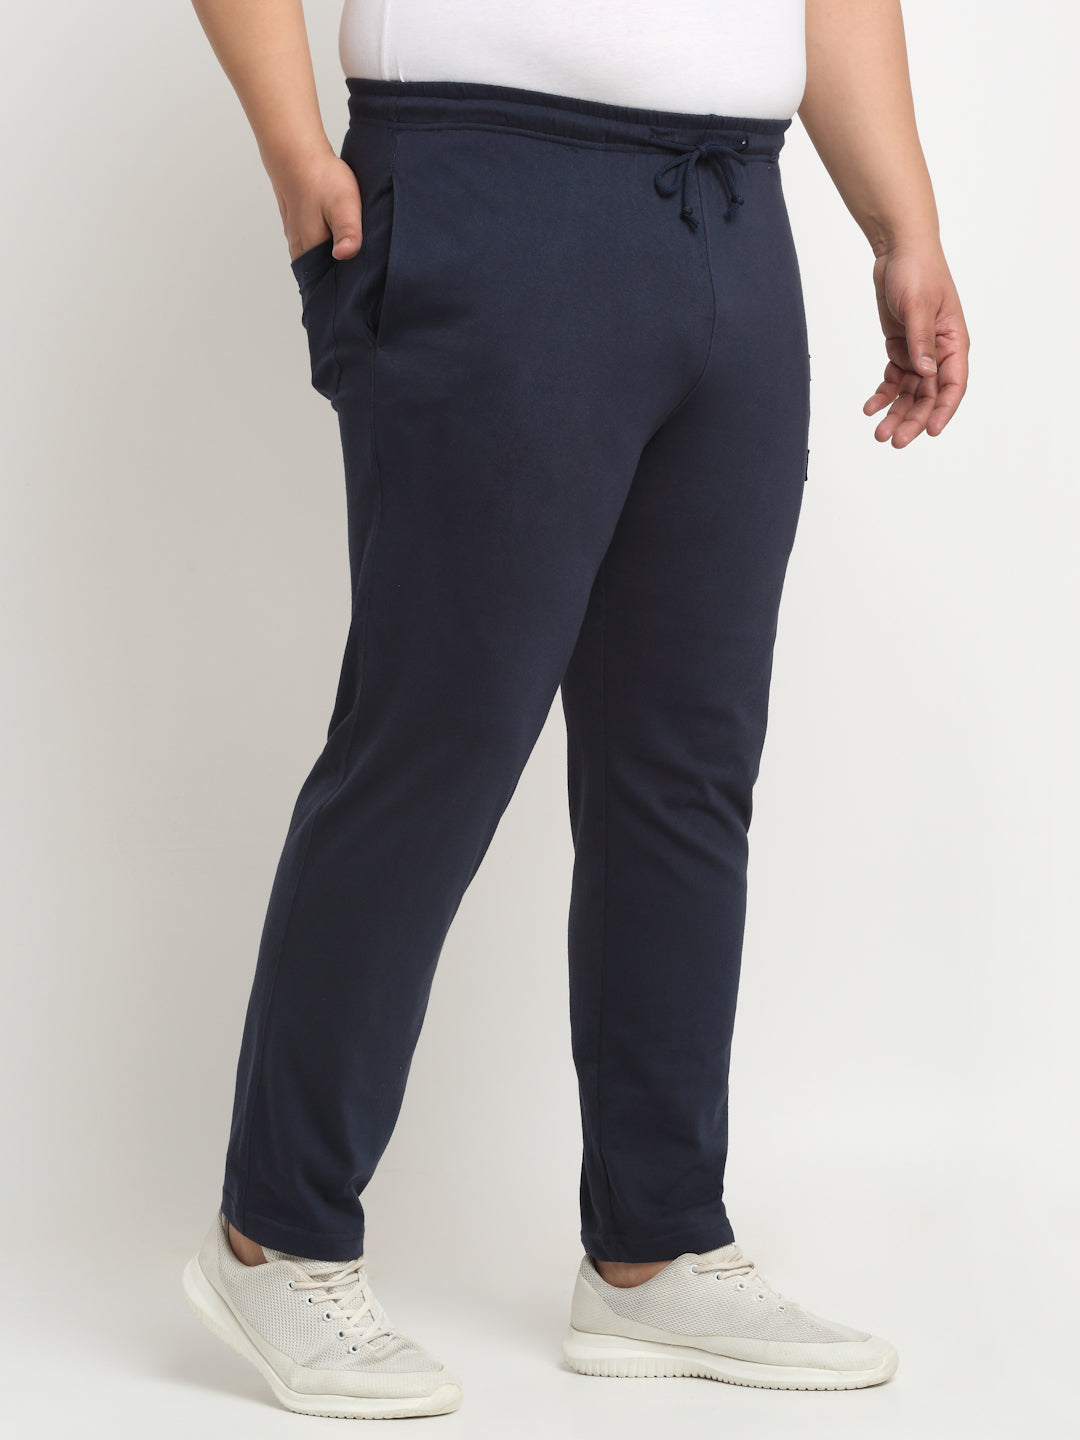 Brown pair of regular fit linen trousers – Rota SRL